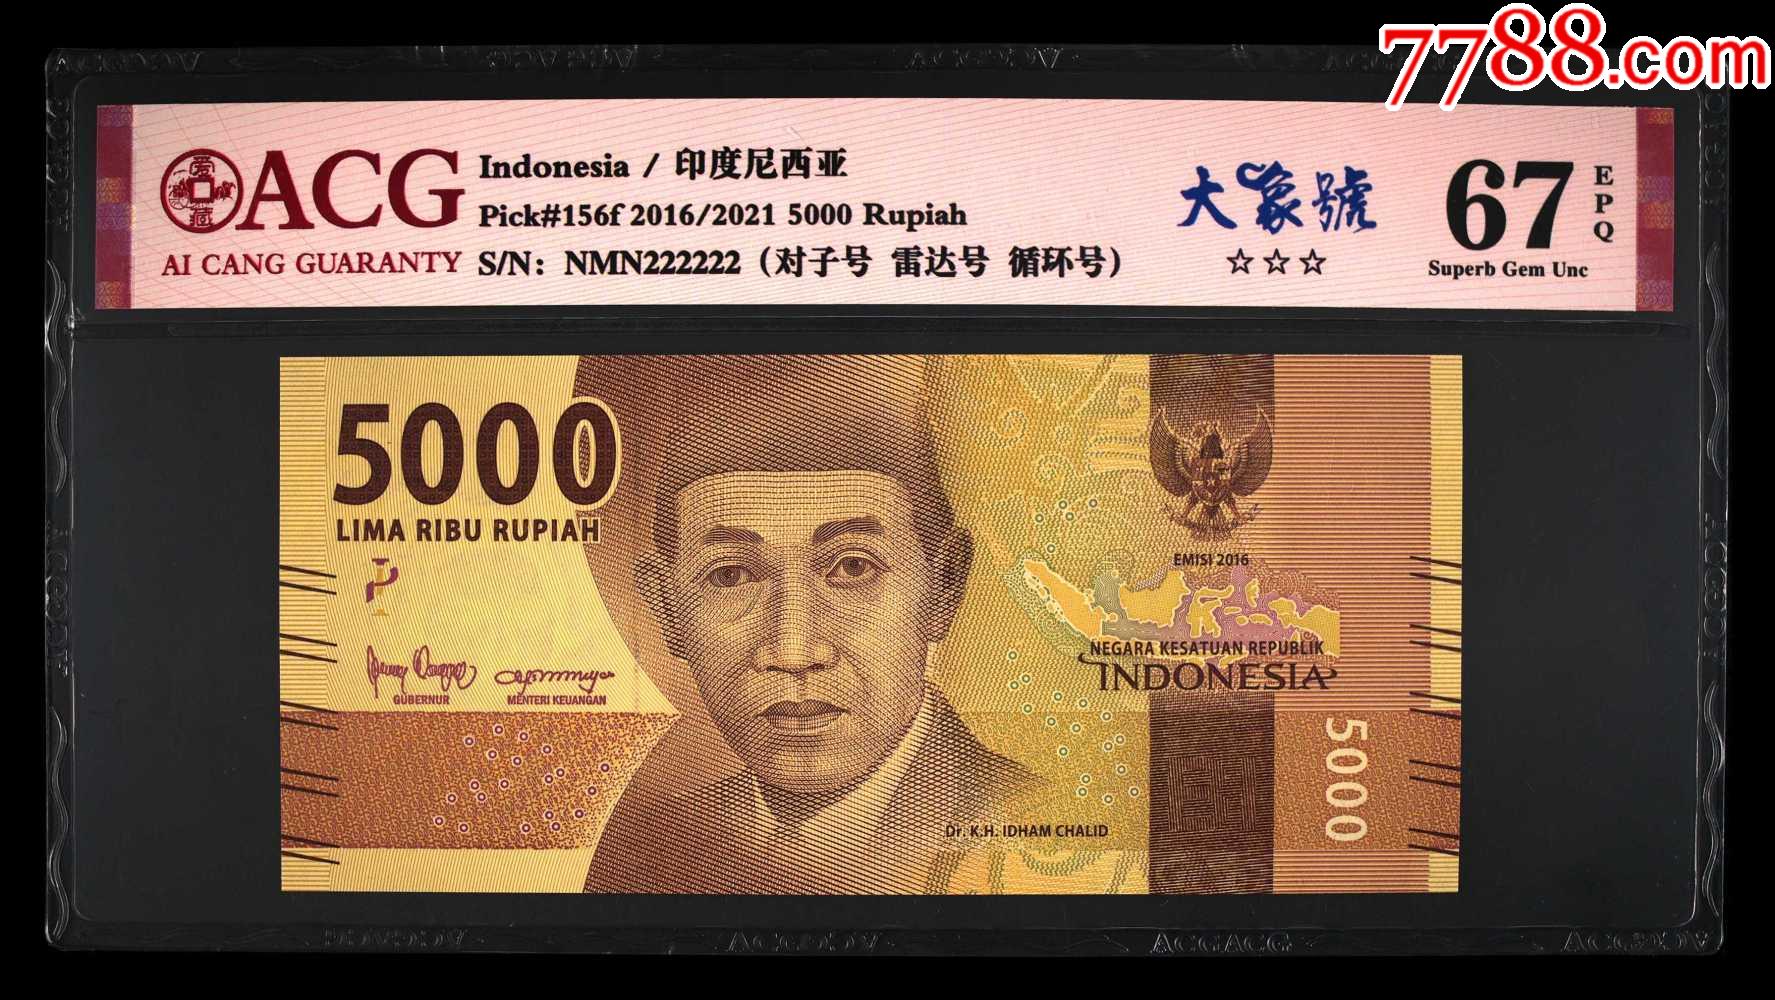 印度尼西亚盾 库存照片. 图片 包括有 付款, 方法, 卢比, 纸张, 印度尼西亚语, 货币, 蓝色, 一千 - 249739928